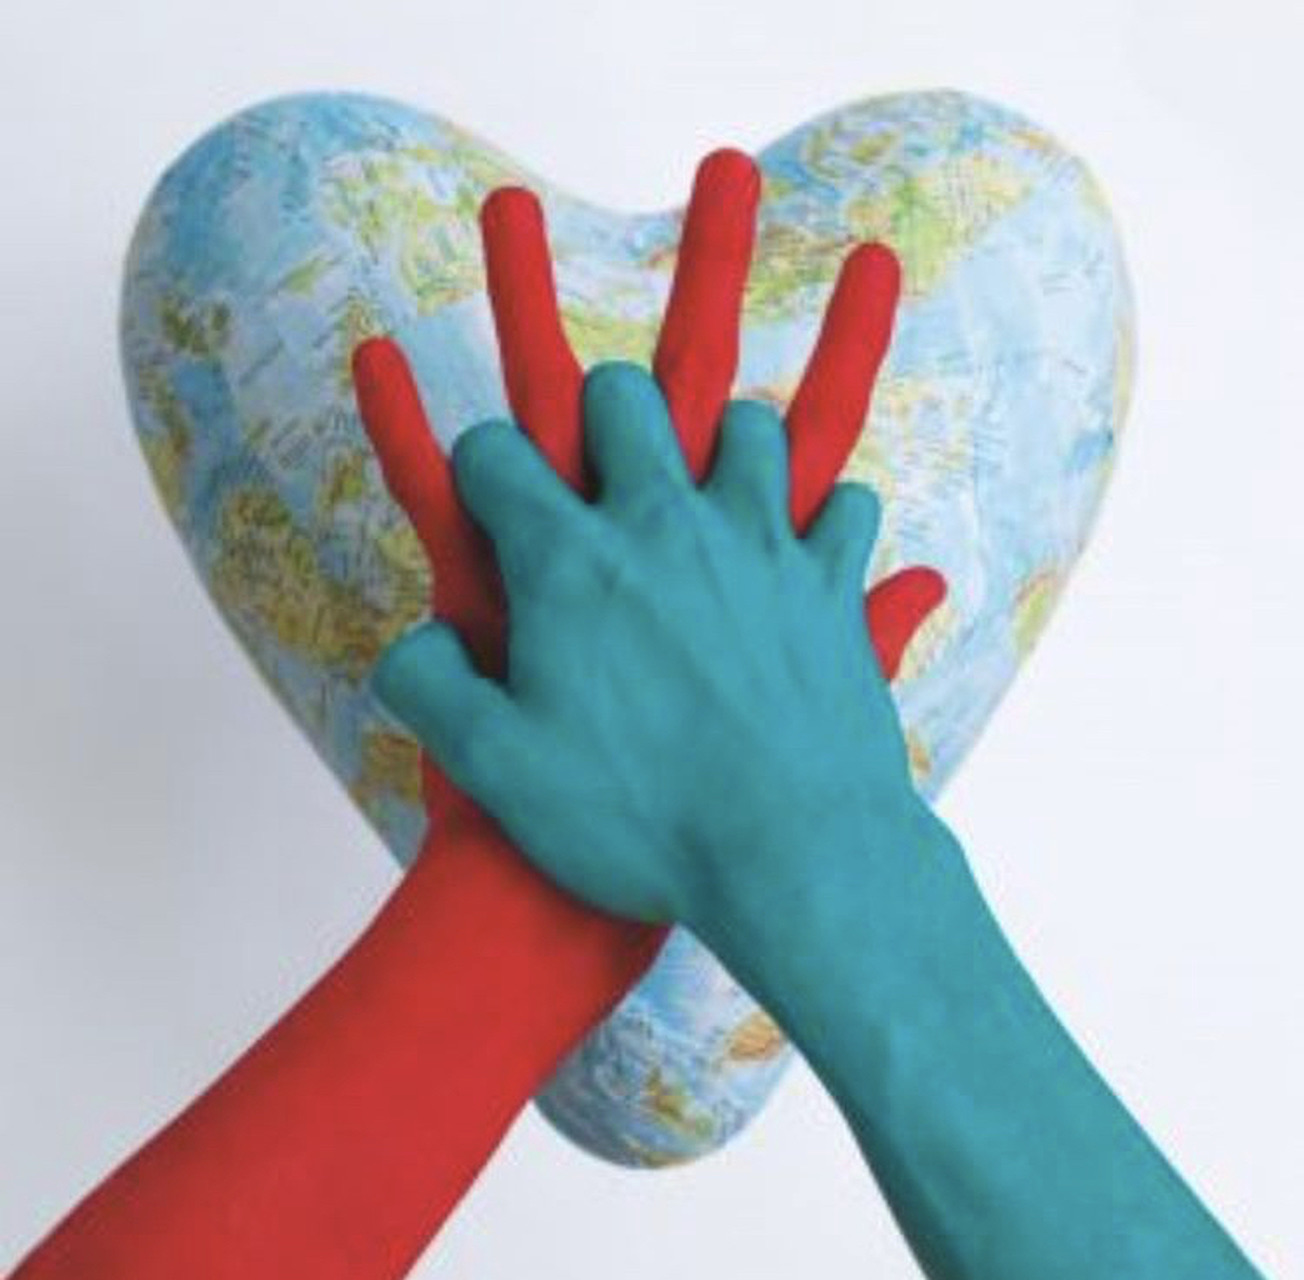 World Restart a Heart Day 2023 HealthFirst